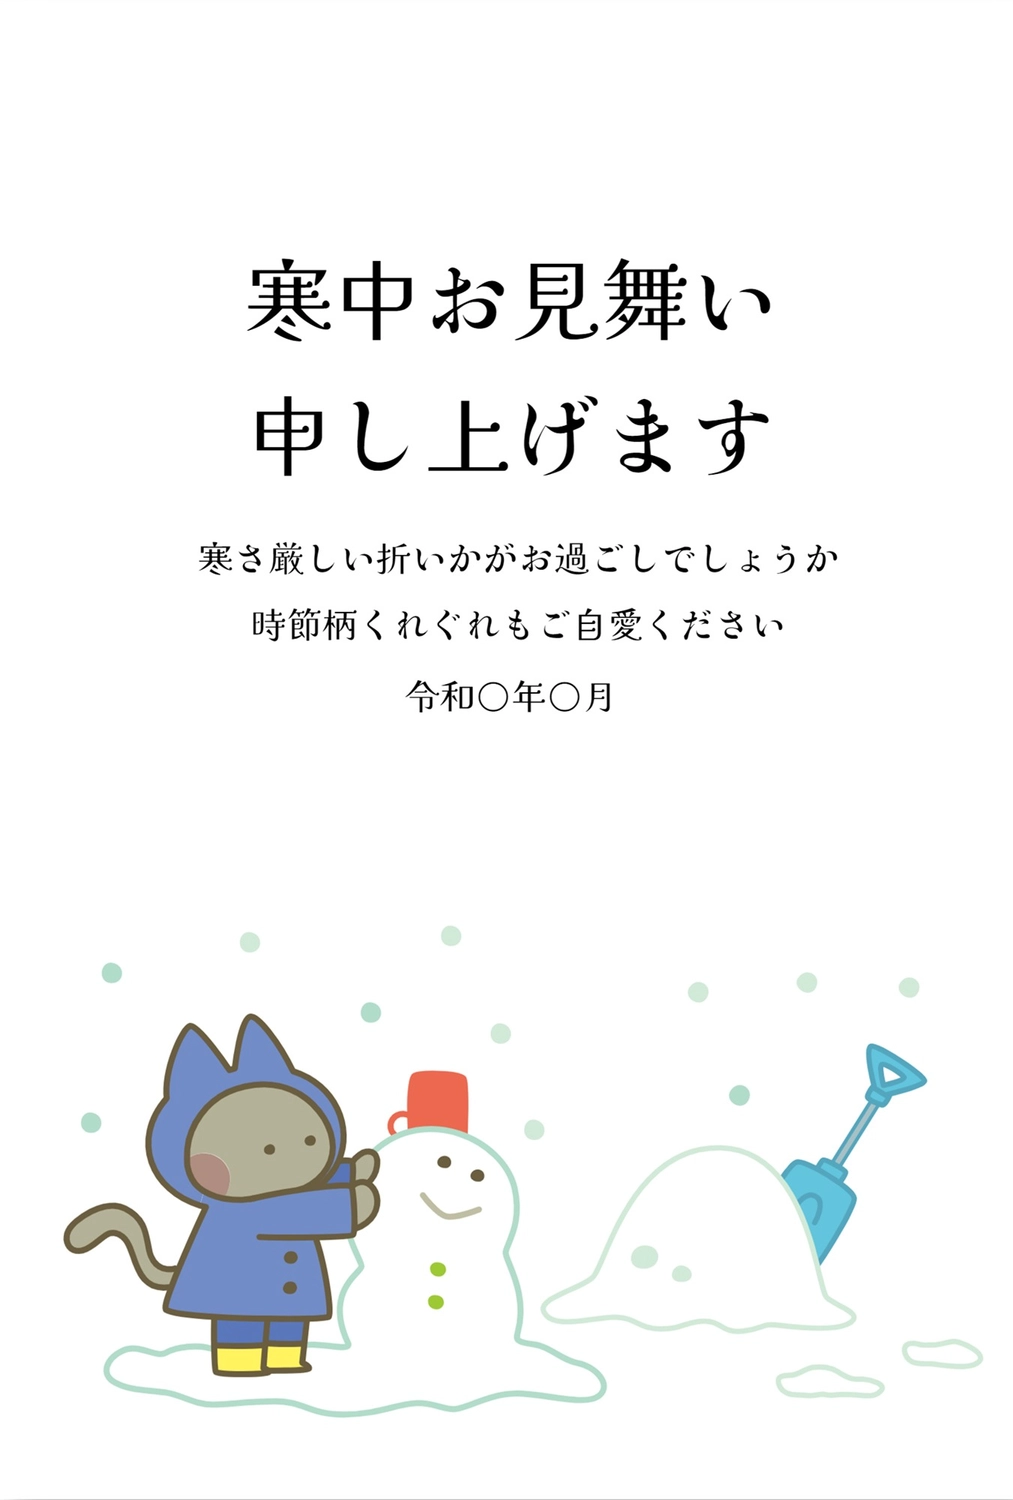 寒中見舞い　雪だるまとネコ, February, greeting card, winter greeting, Mid-winter Greeting template